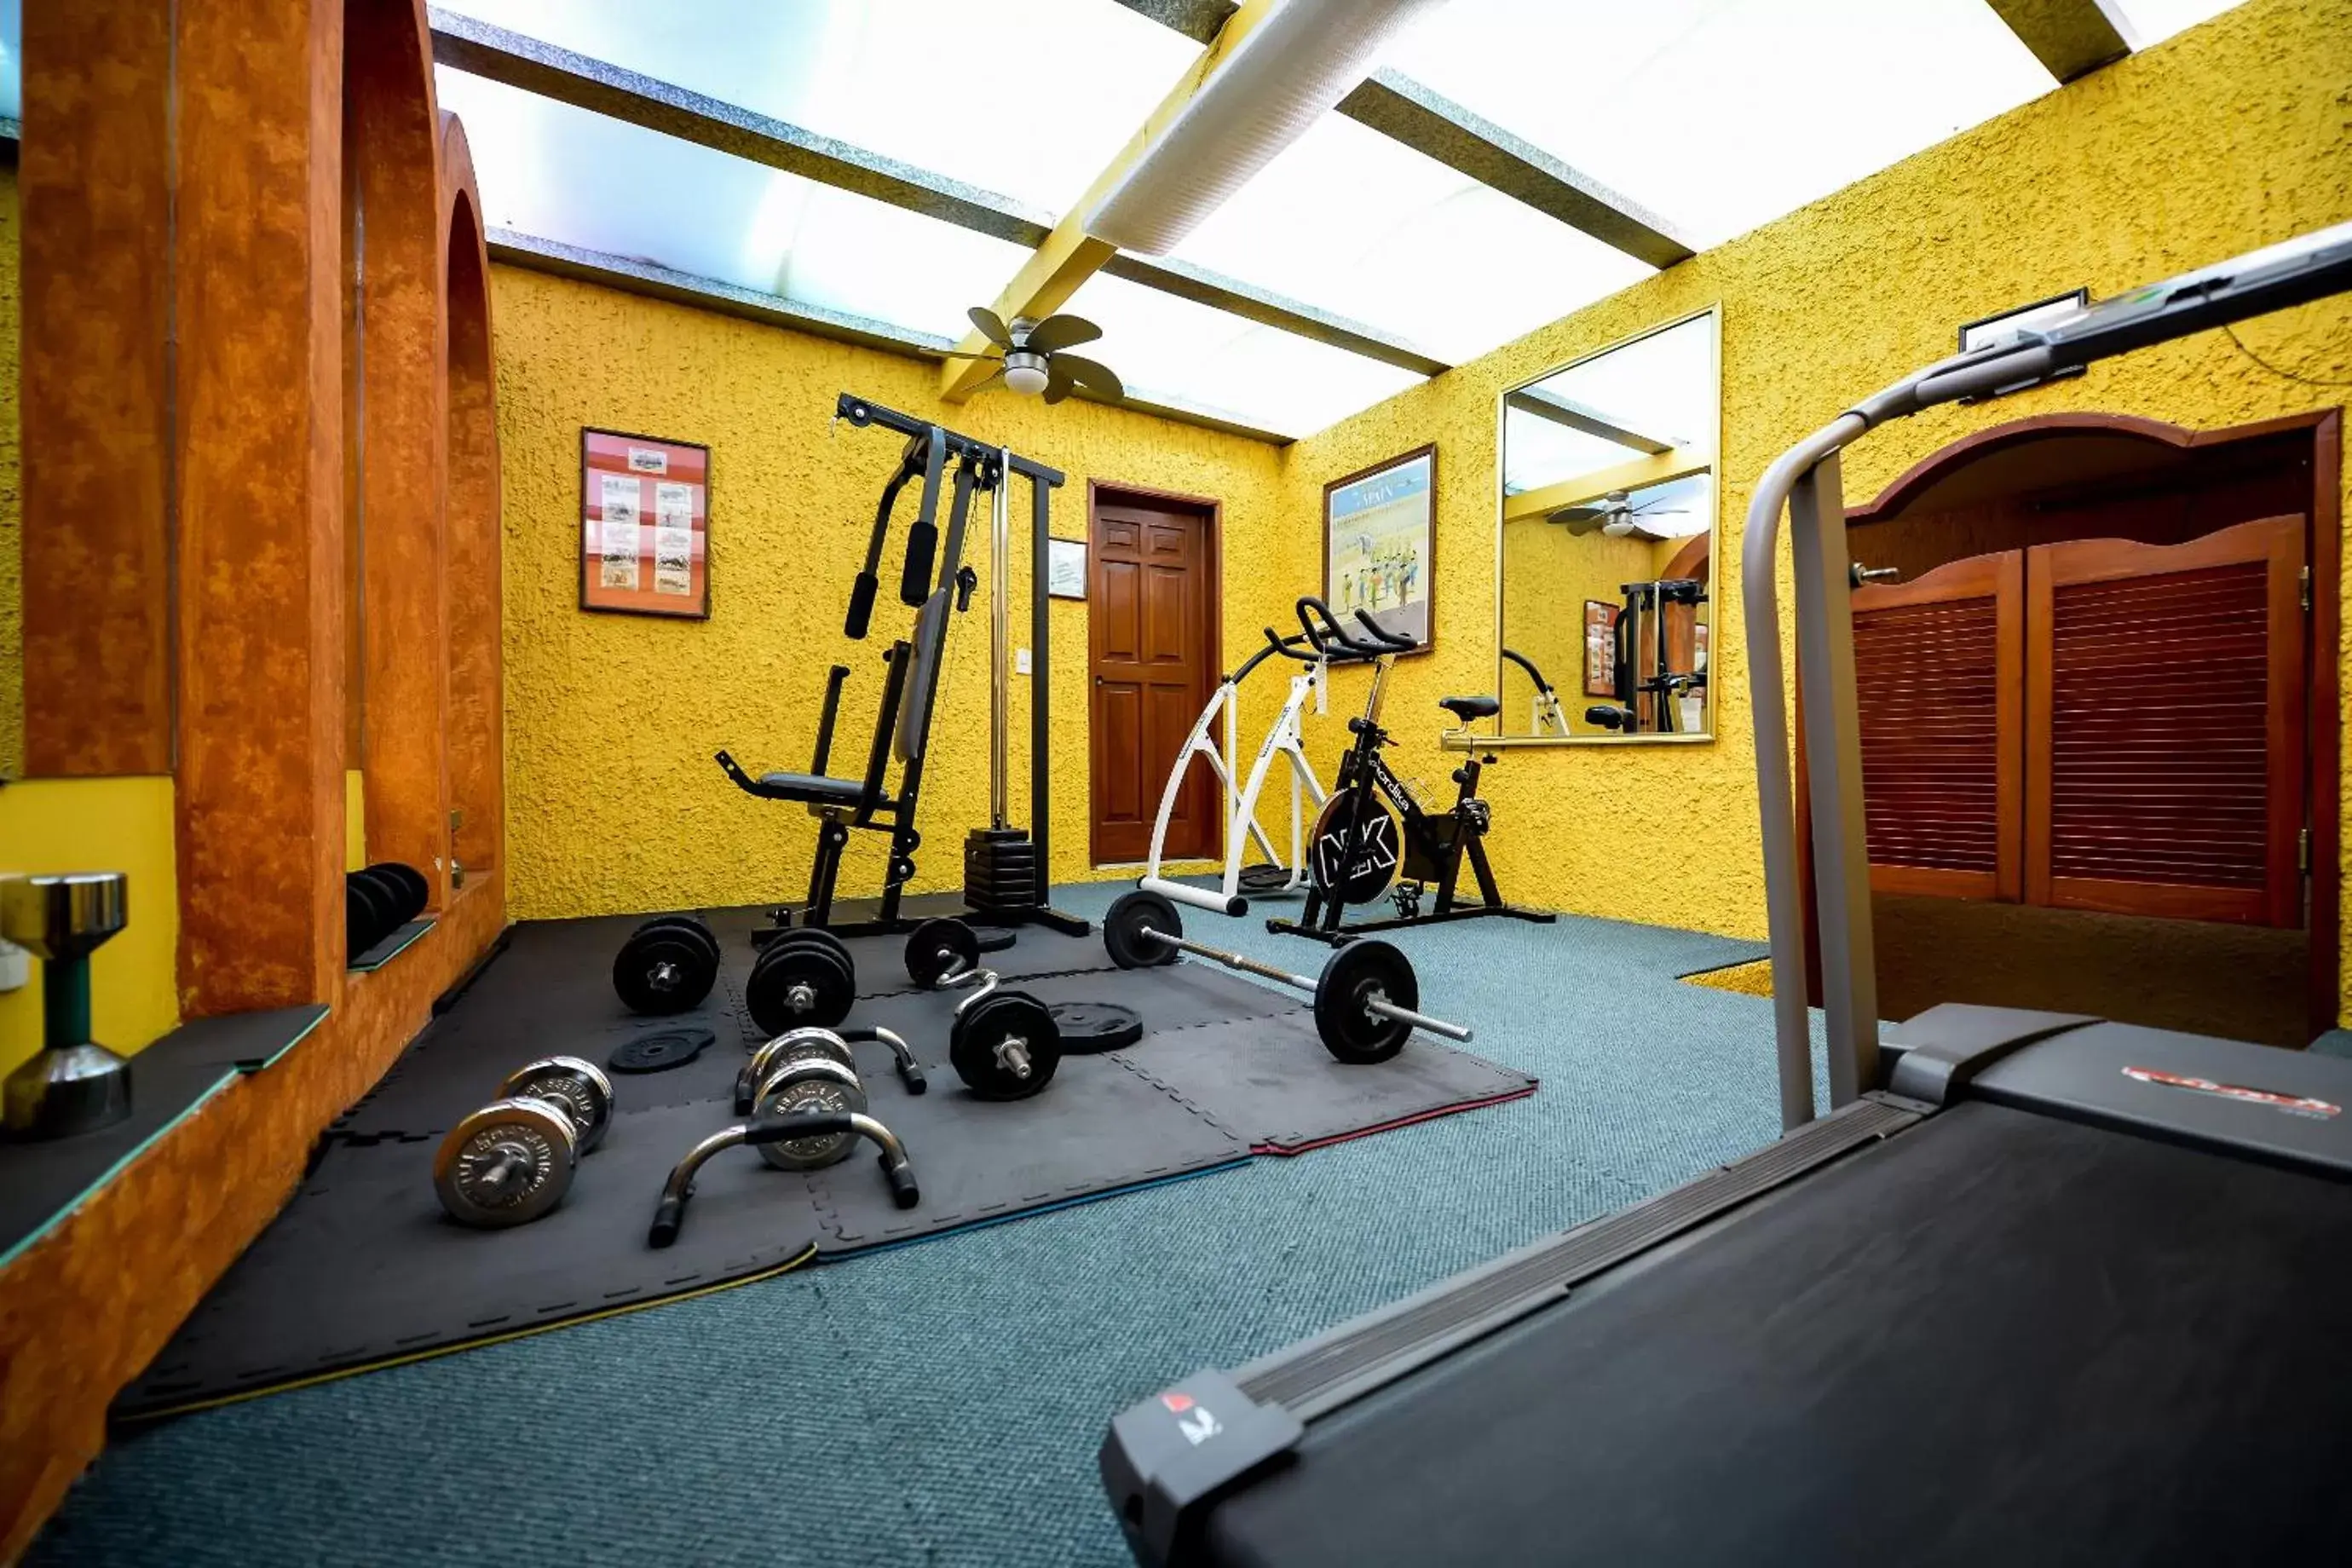 Fitness centre/facilities, Fitness Center/Facilities in Hotel La Mansion del Sol